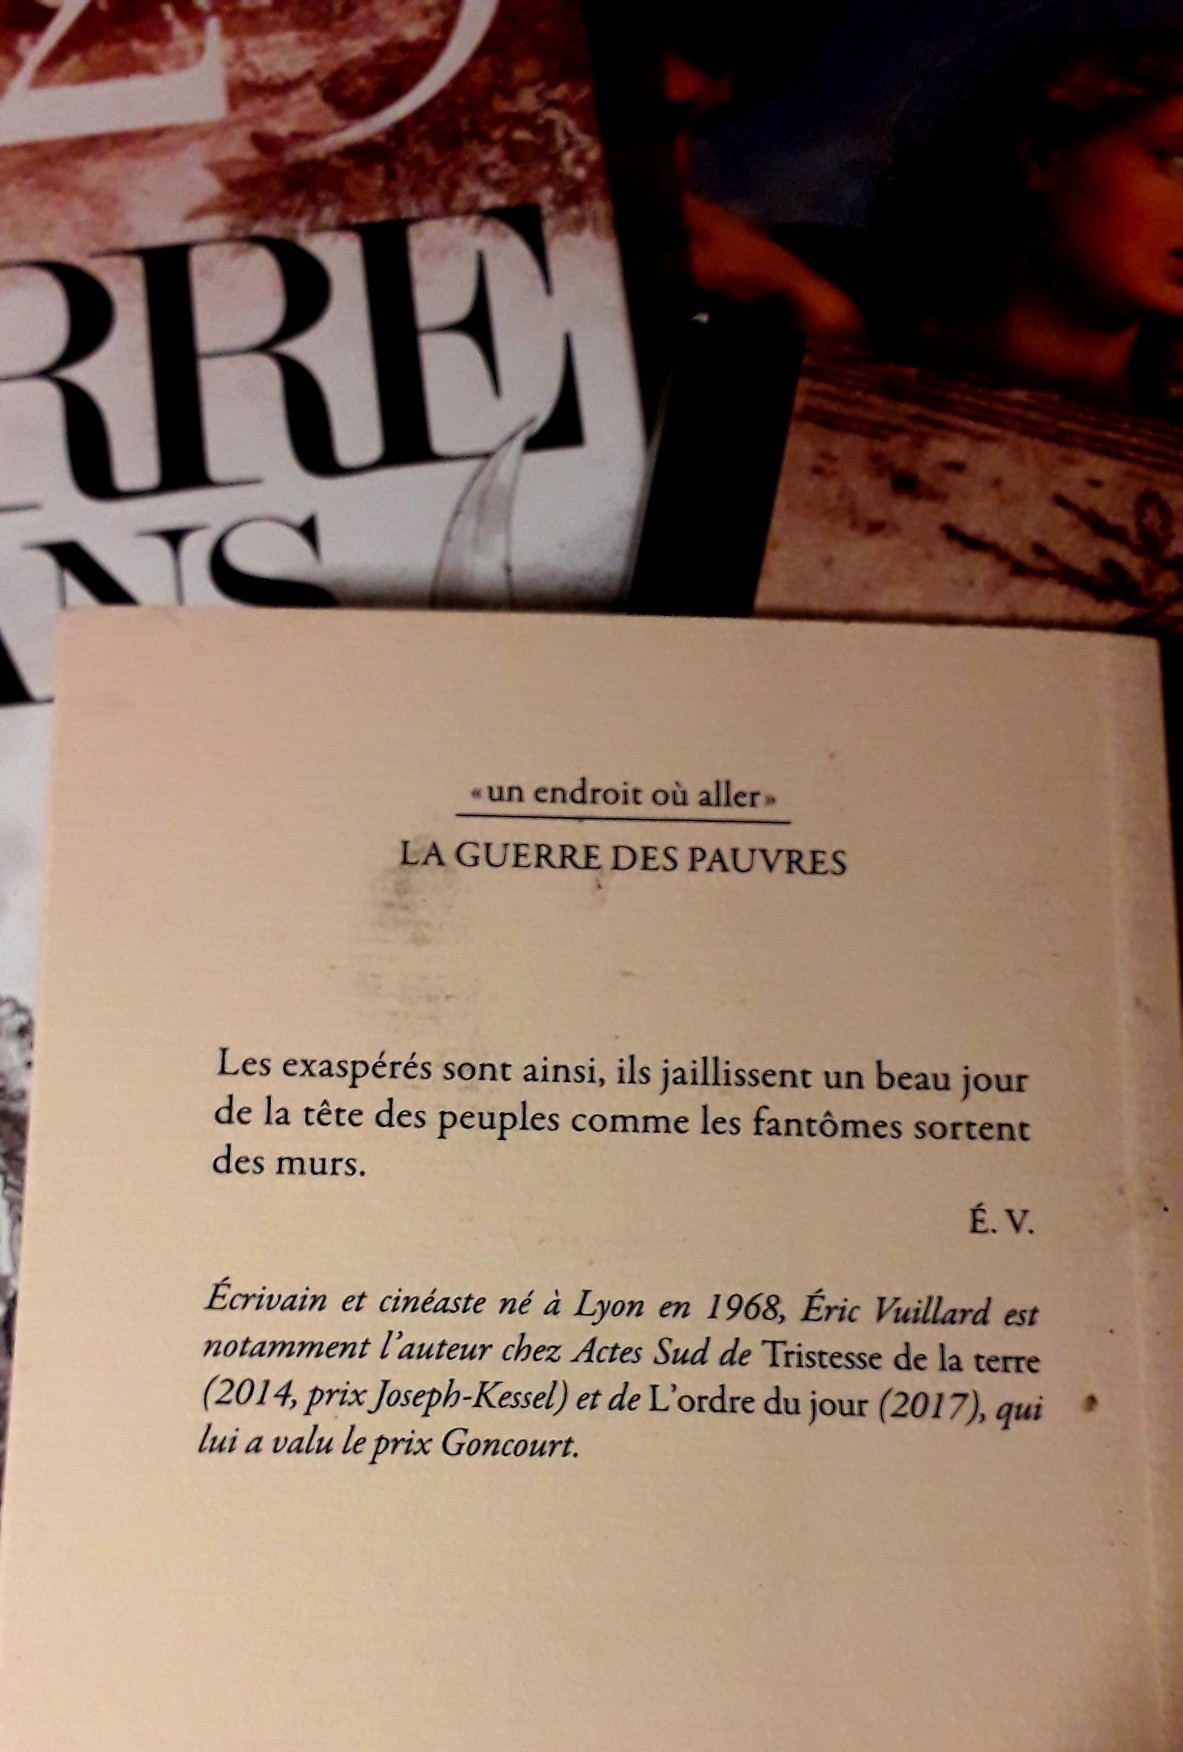 4ème de couverture du livre d'Éric Vuillard, "La guerre des pauvres", aux éditions Actes Sud.